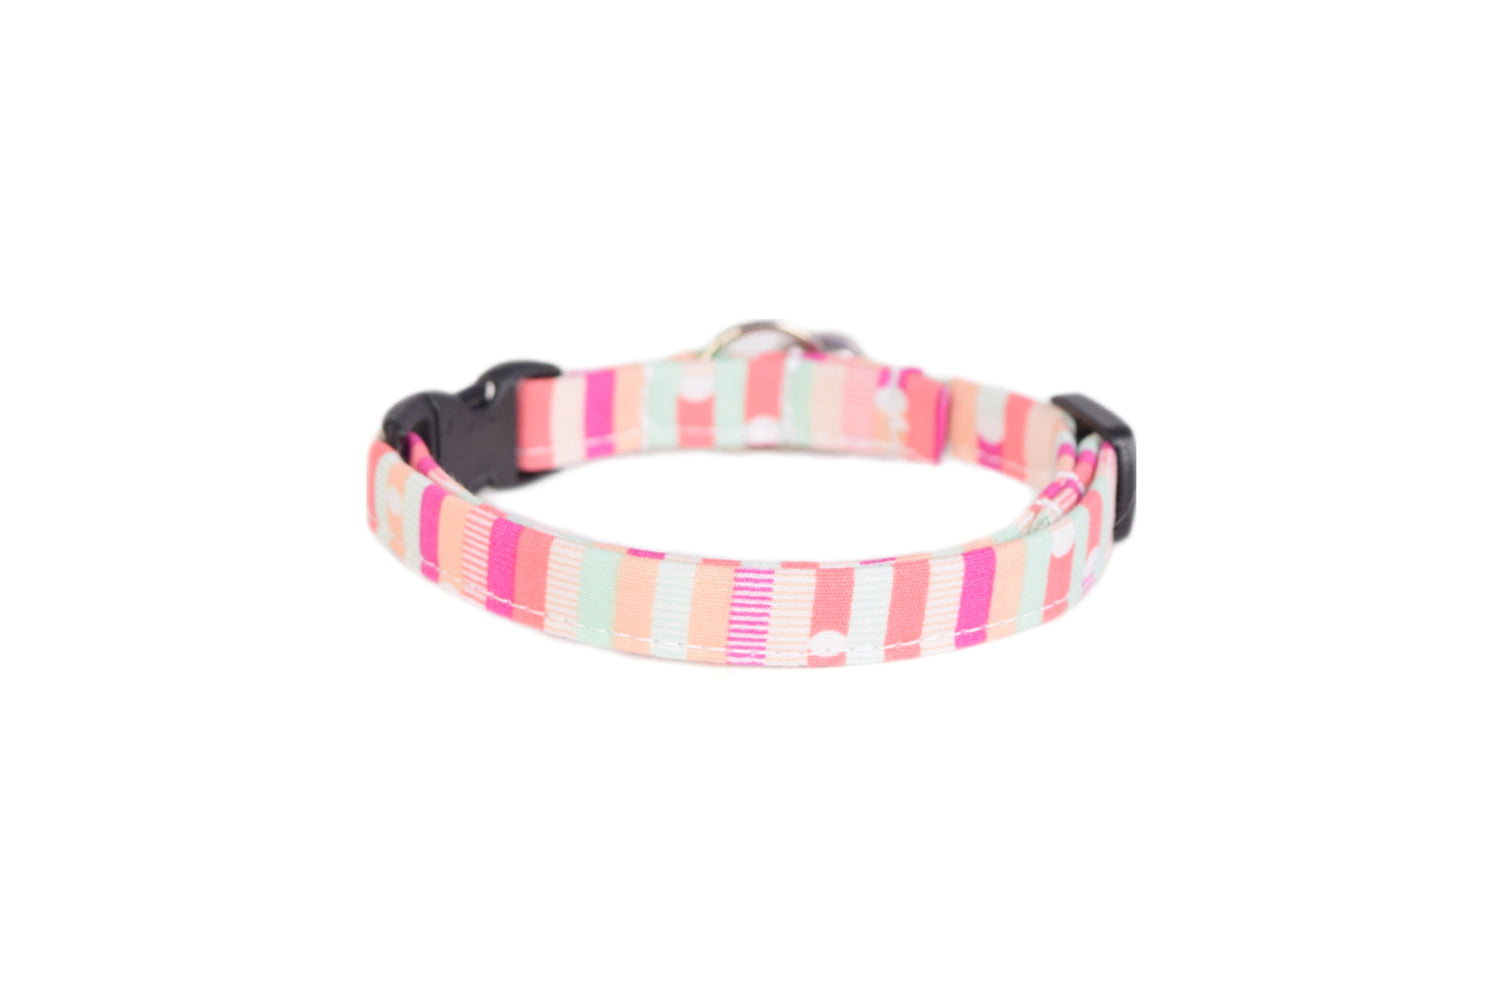 Modern Pink Cat Collar - Abstract Pink Stripes - Breakaway Cat Collar - Handmade by Kira's Pet Shop